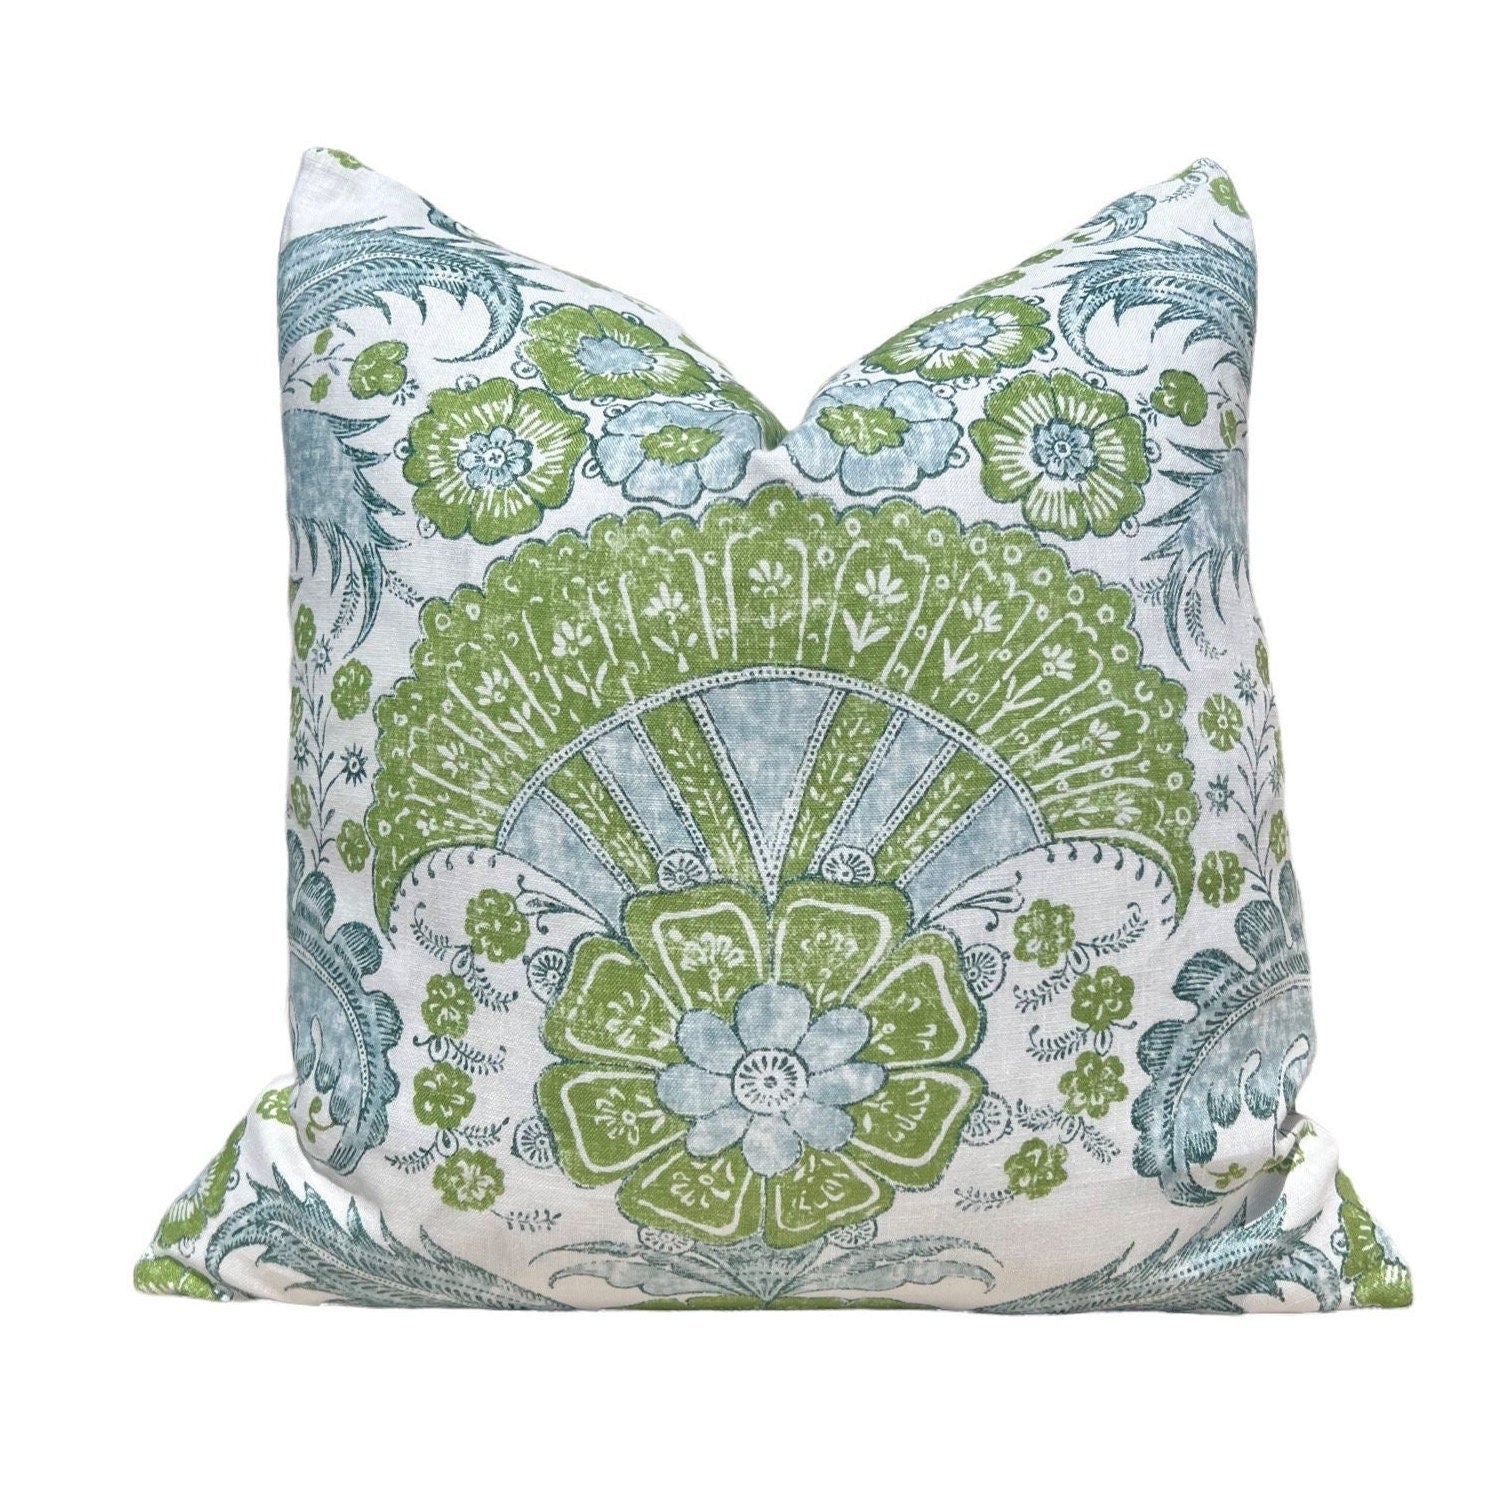 Schumacher Calicut Linen Pillow in Aqua and Green. Designer Pillows, High End Pillows, Aqua Blue Floral Pillow, Modern Floral Pillow